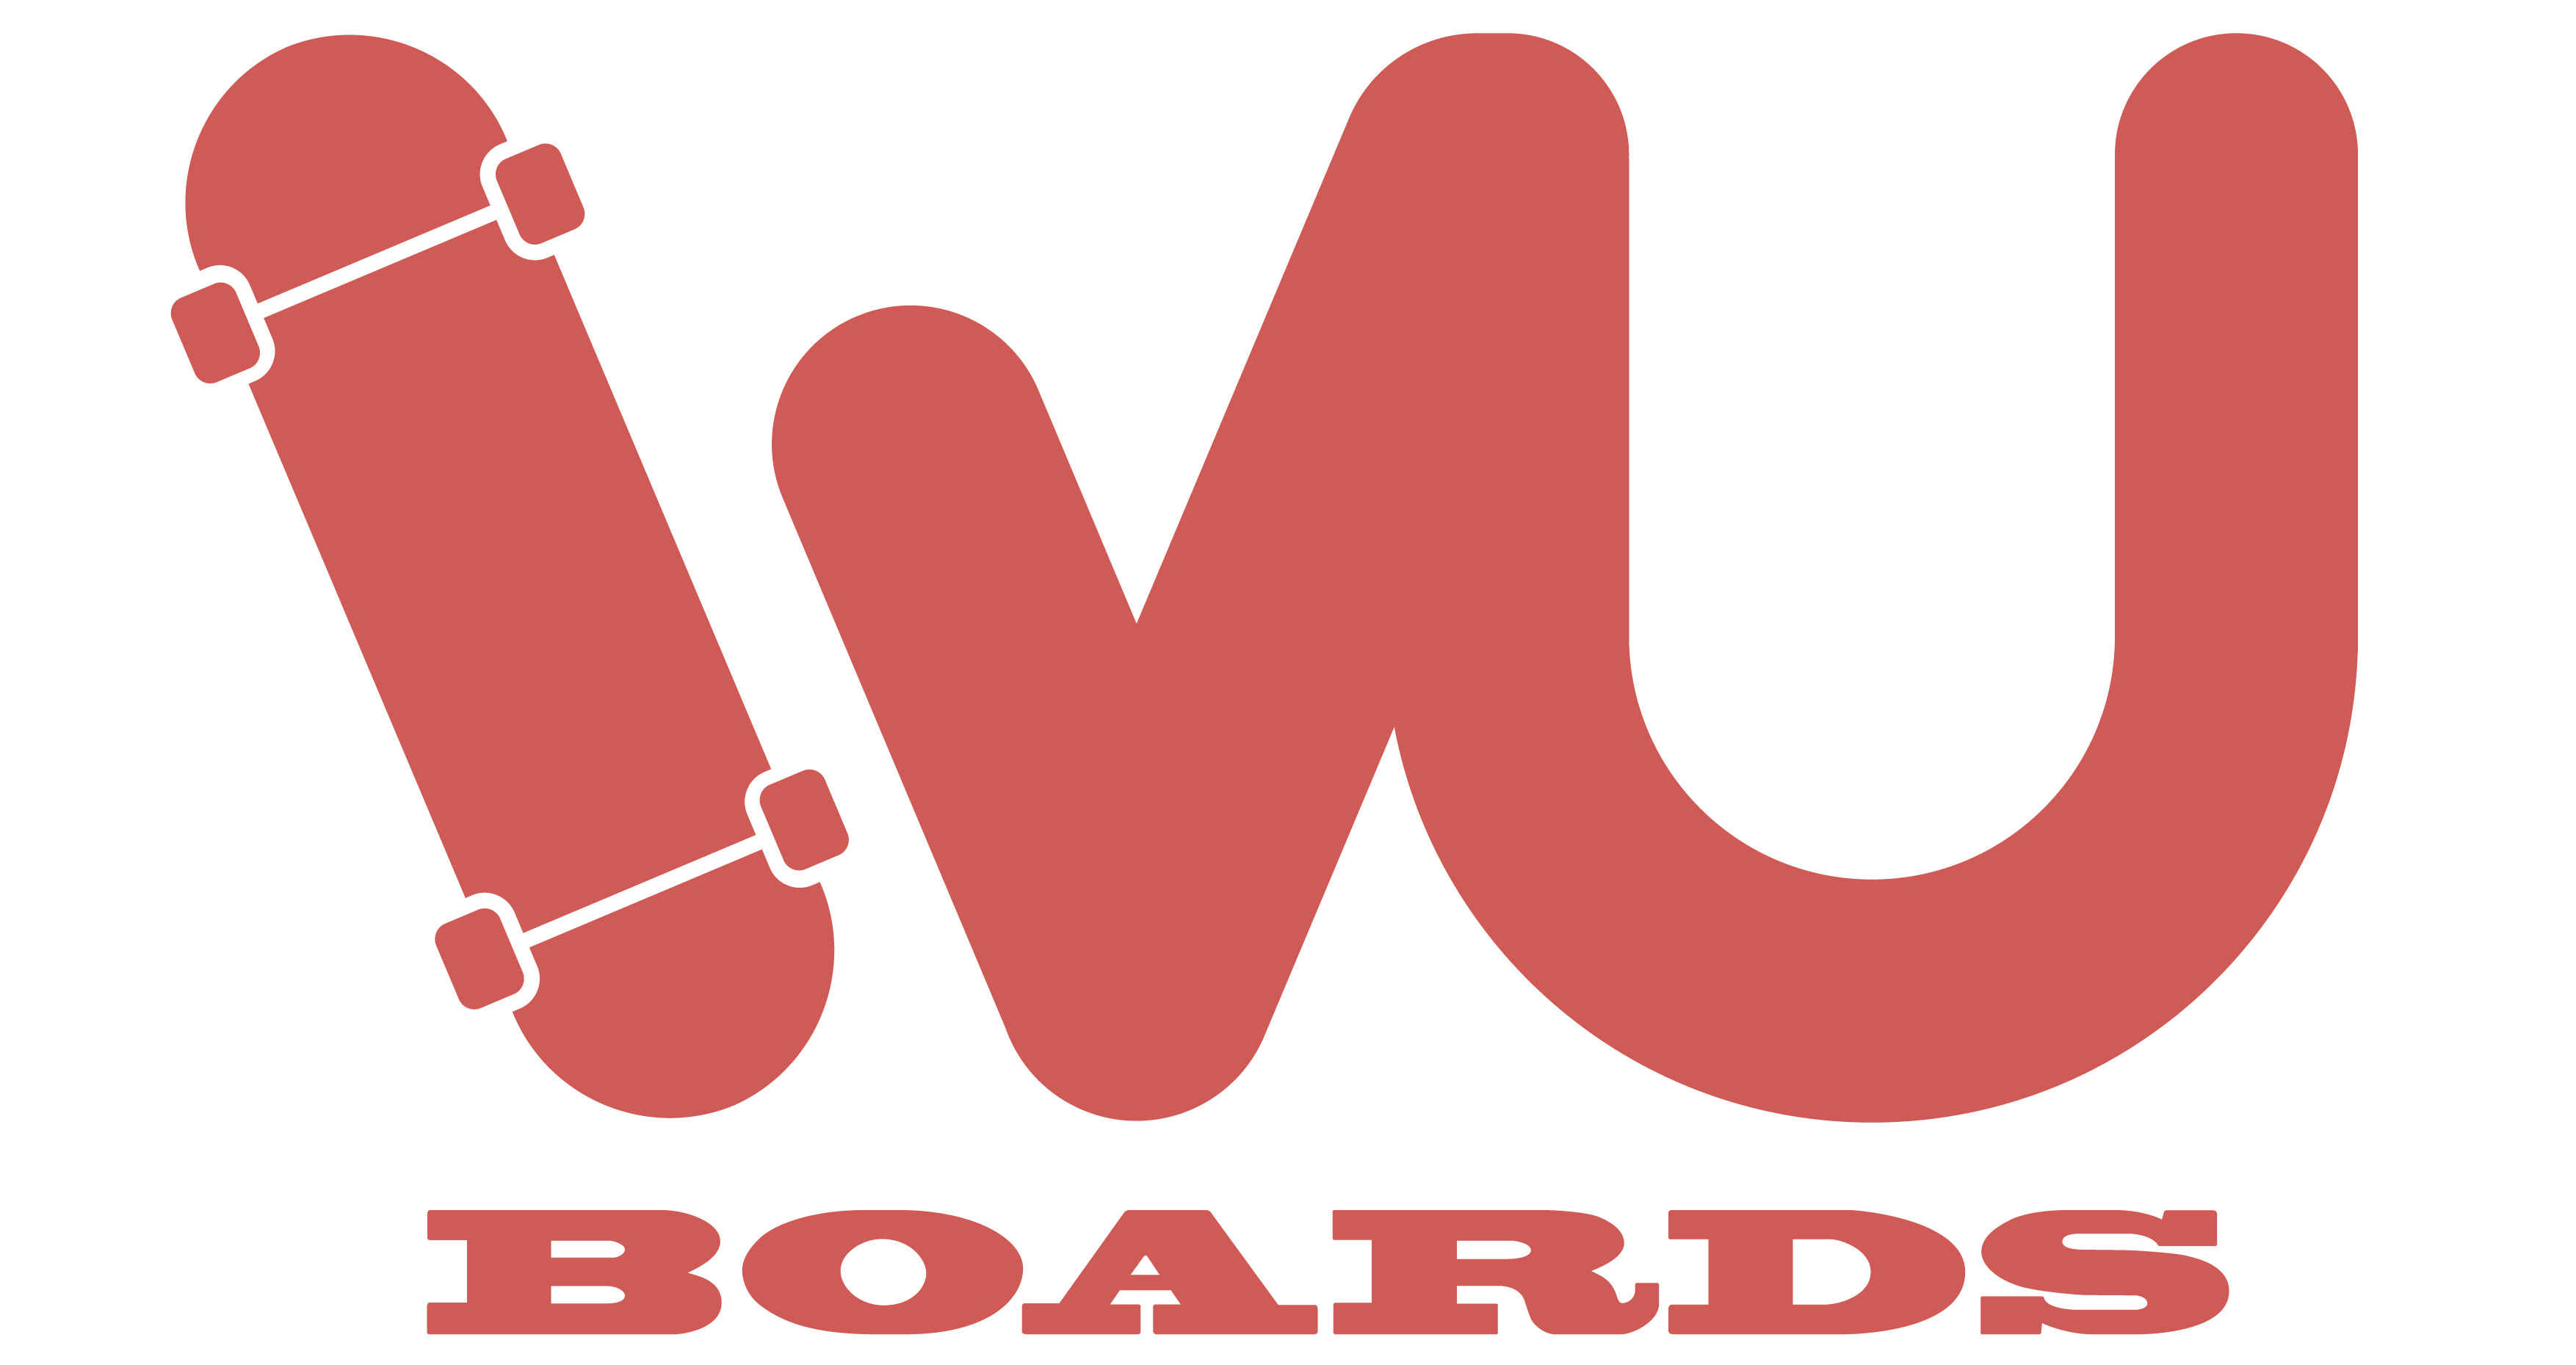 WU boards